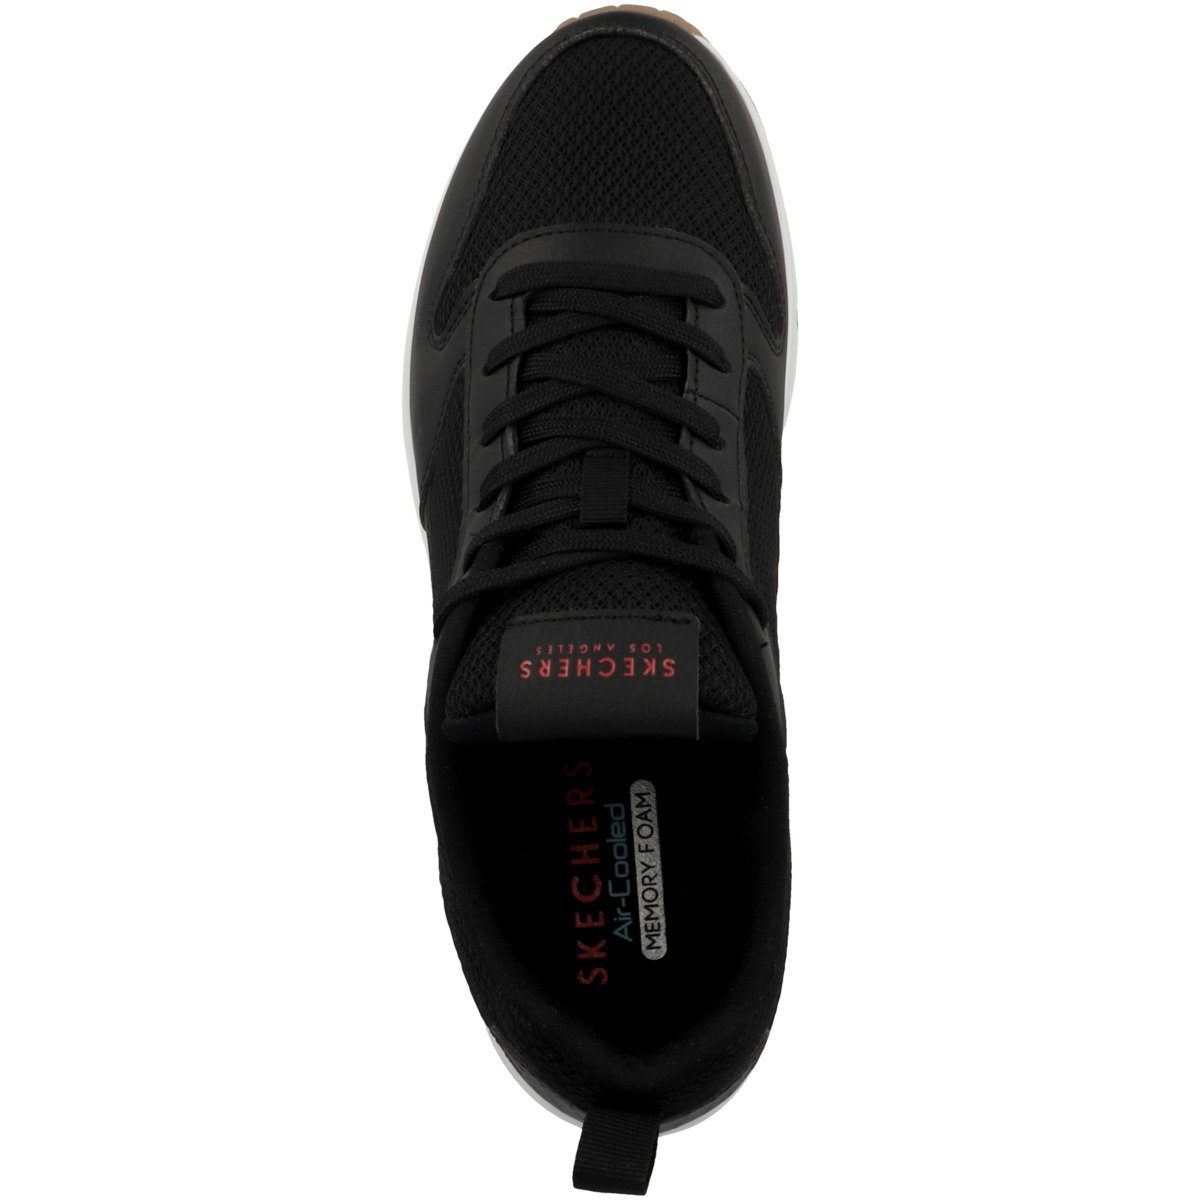 Uno Herren - Perforation Skechers Sneaker Fastime